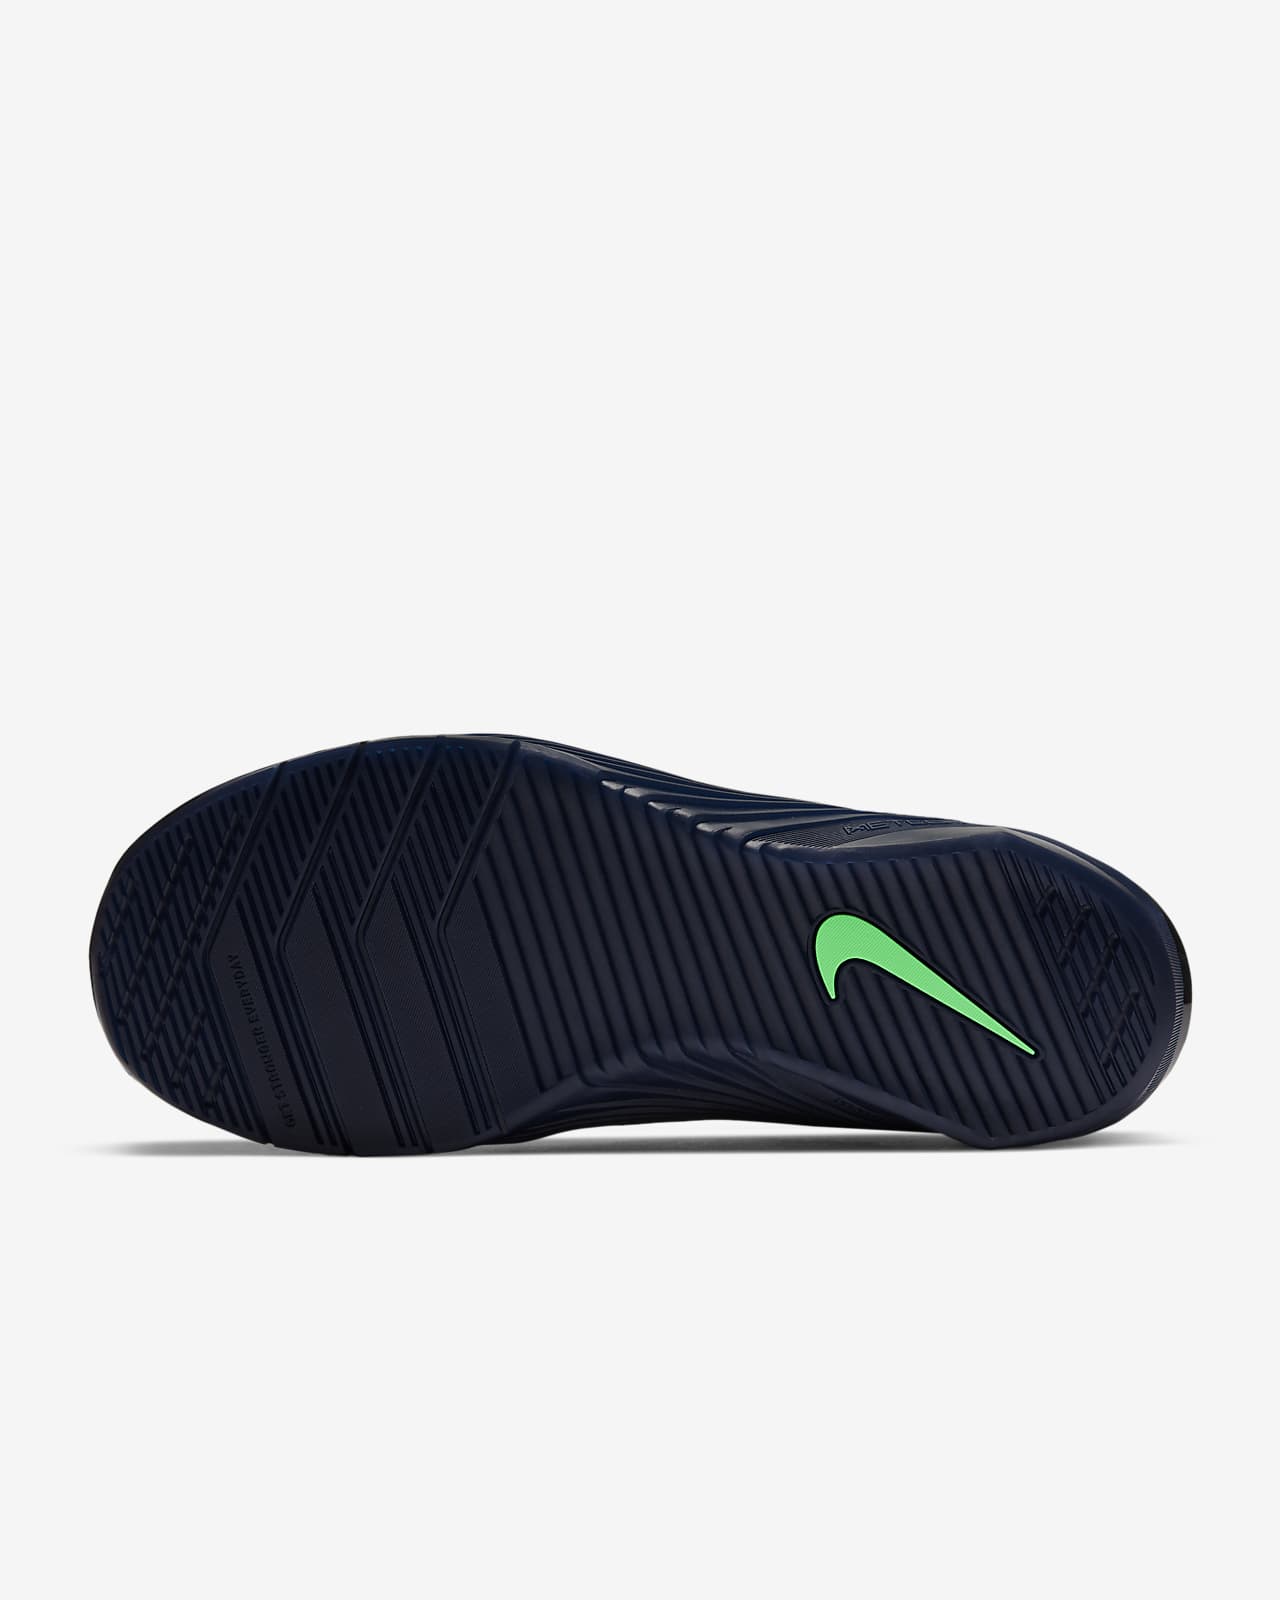 Nike Metcon 6 AMP Men's Training Shoe 